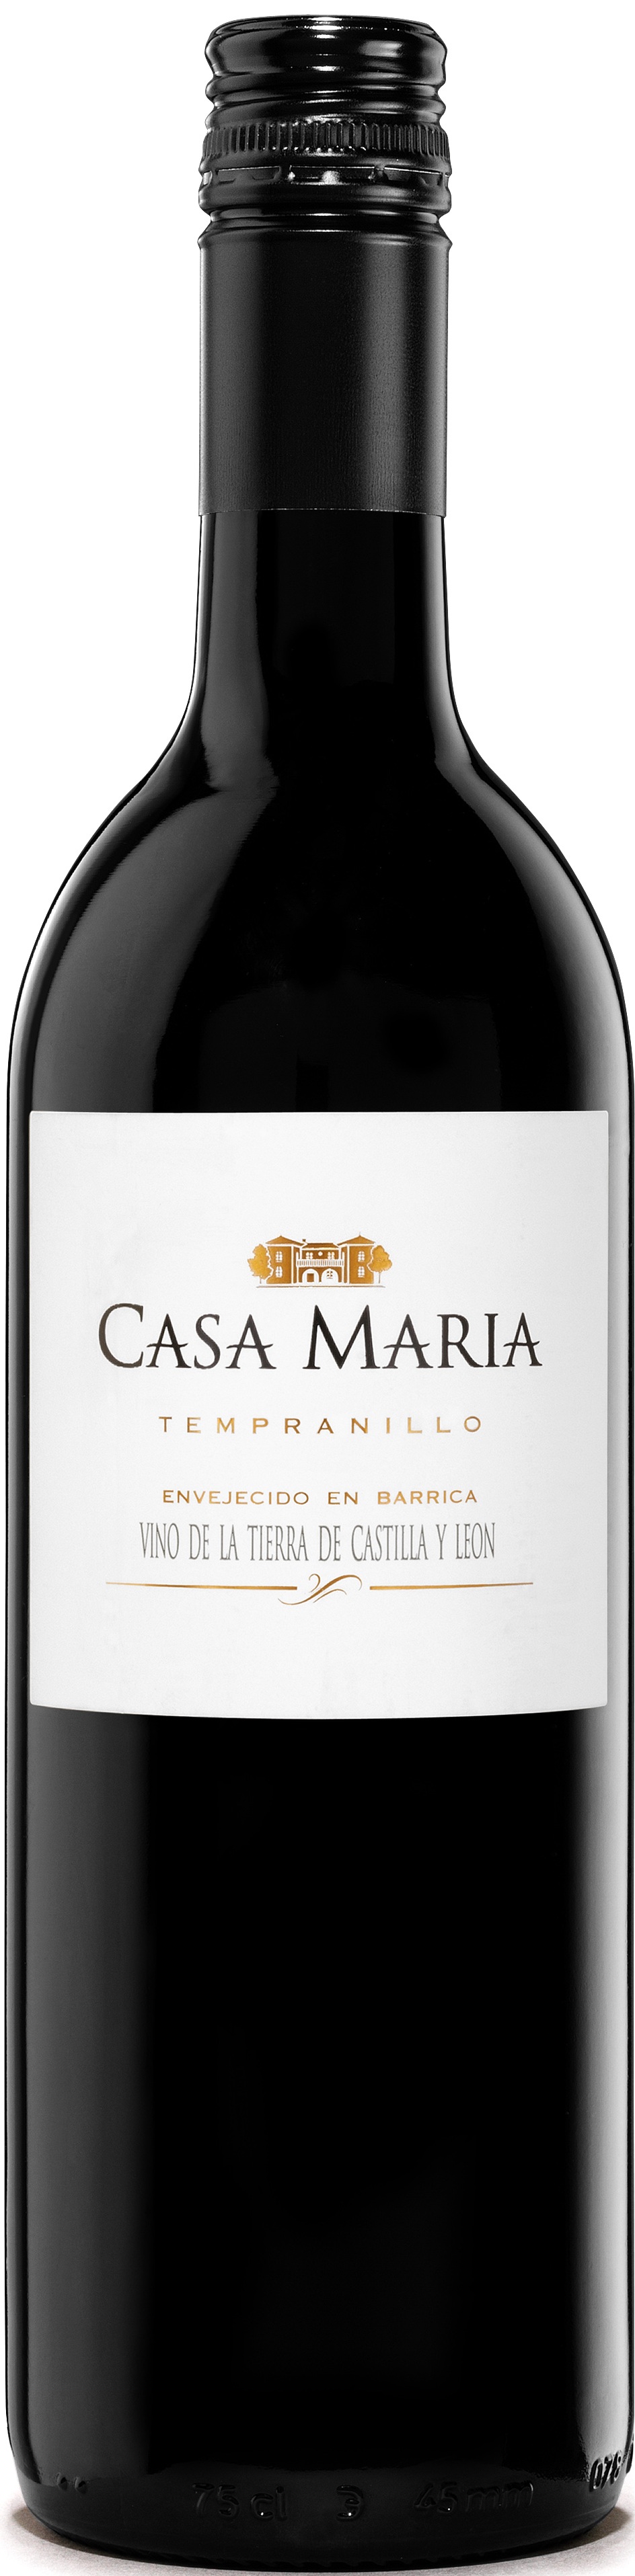 Image of Wine bottle Casa María Roble